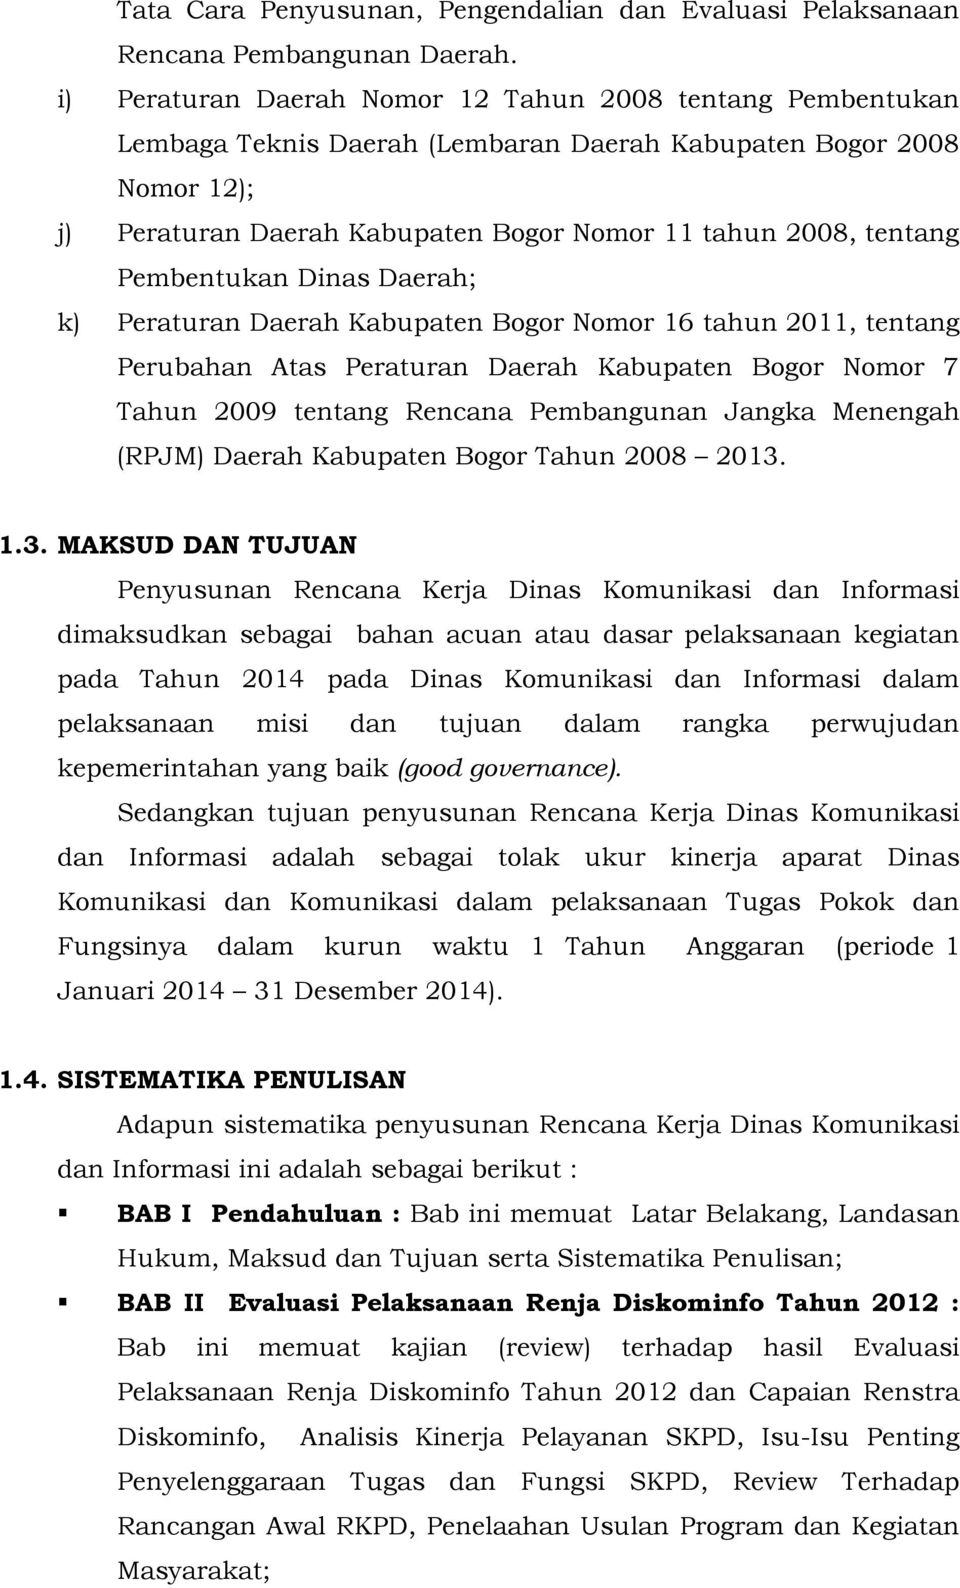 Pembentukan Dinas Daerah; k) Peraturan Daerah Kabupaten Bogor Nomor 16 tahun 2011, tentang Perubahan Atas Peraturan Daerah Kabupaten Bogor Nomor 7 Tahun 2009 tentang Rencana Pembangunan Jangka